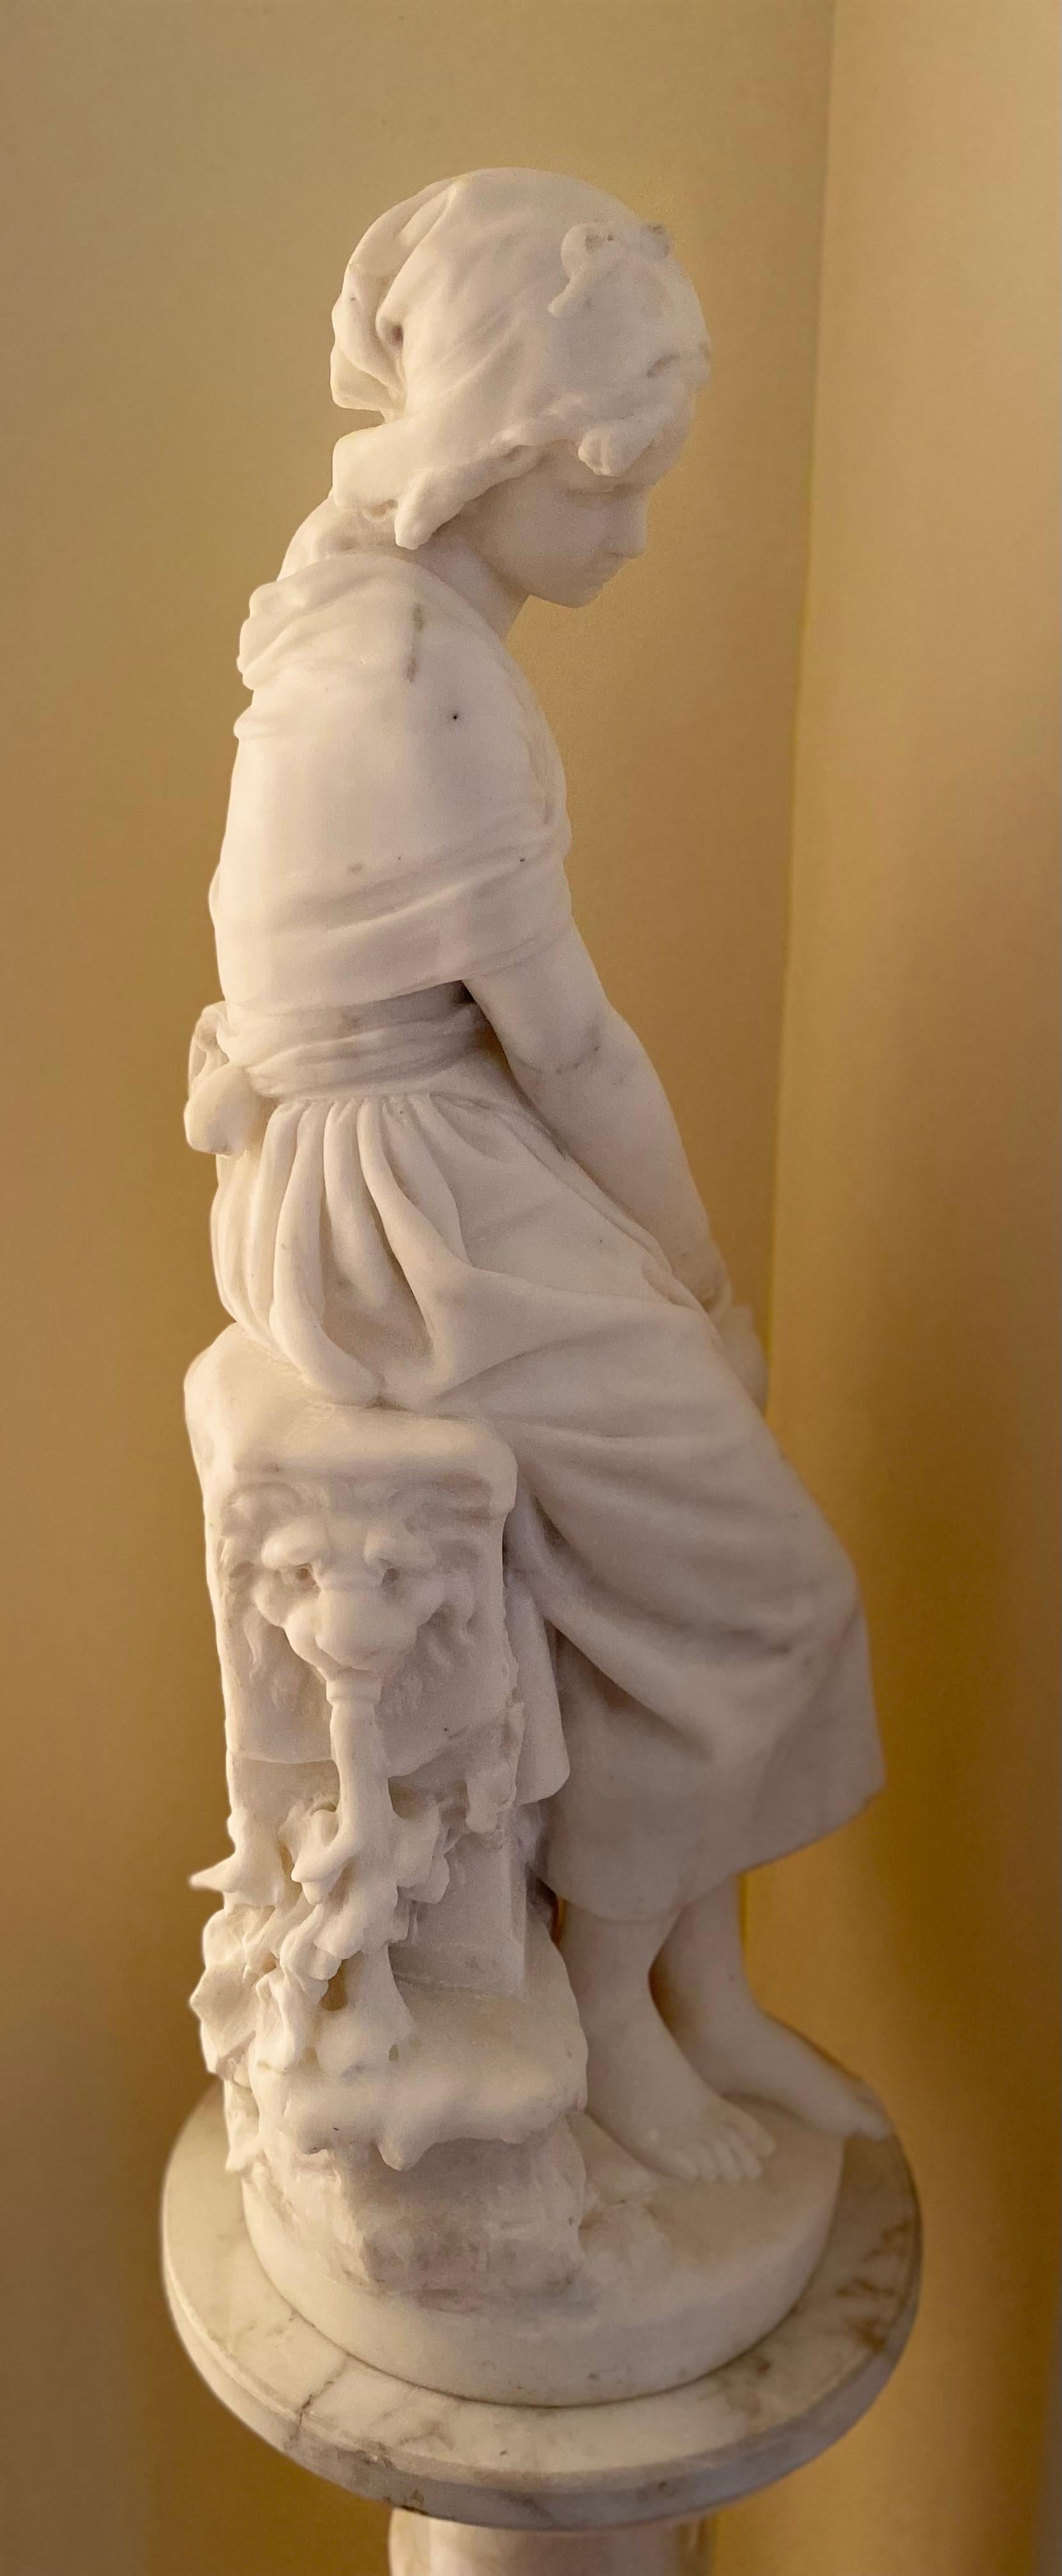 Schöner La Belle Epoque Marmor in niveaulosem Zustand.

Mathurin Moreau (1822-1912) war ein französischer Bildhauer im akademischen Stil. Er wurde in Dijon geboren, stellte erstmals 1848 im Salon aus und erhielt schließlich 1897 eine Ehrenmedaille